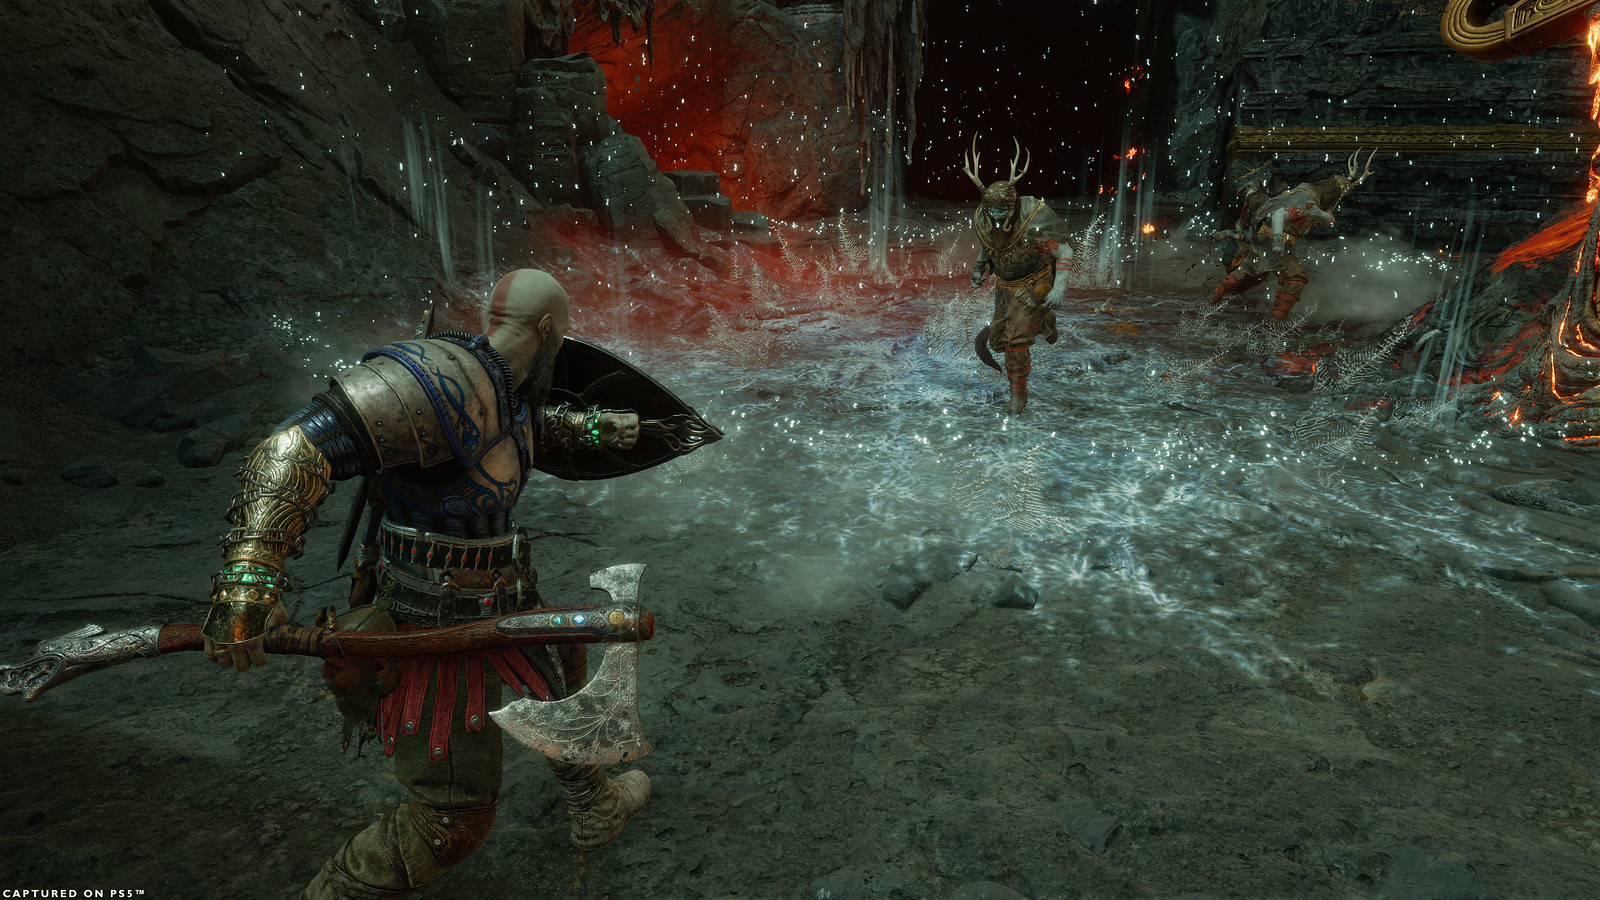 Kratos se enfrenta a atacantes en la arena de Muspelheim, cuyo suelo está cubierto de hielo a causa del efecto de su invocación rúnica. Kratos alza el escudo frente a sus enemigos mientras sujeta el hacha Leviatán en la mano derecha.